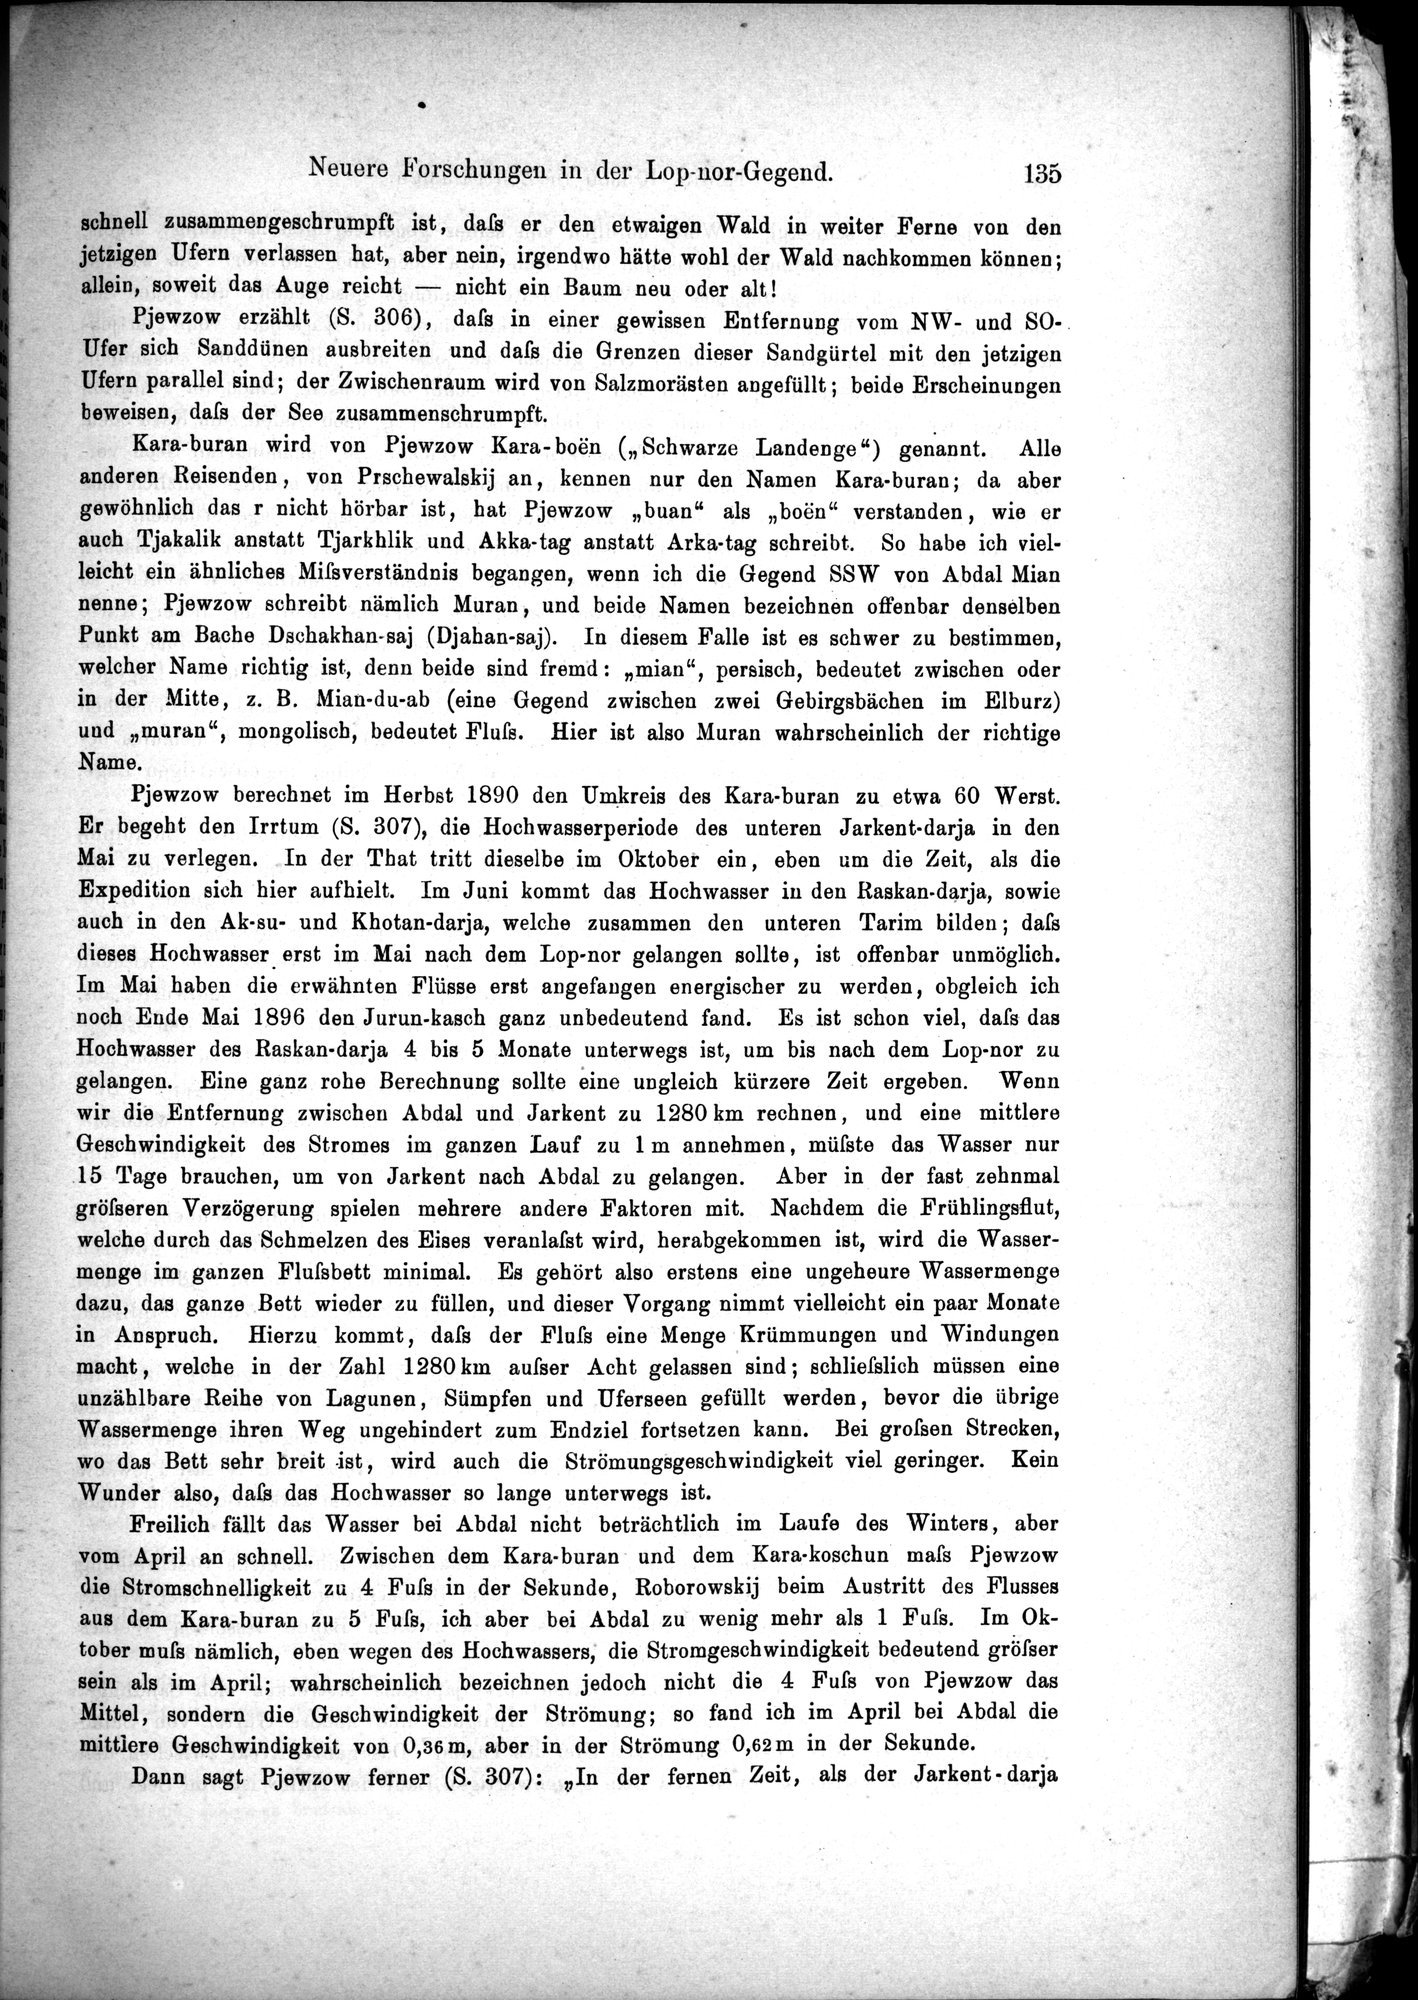 Die Geographische-Wissenschaftlichen Ergebnisse meiner Reisen in Zentralasien, 1894-1897 : vol.1 / Page 147 (Grayscale High Resolution Image)